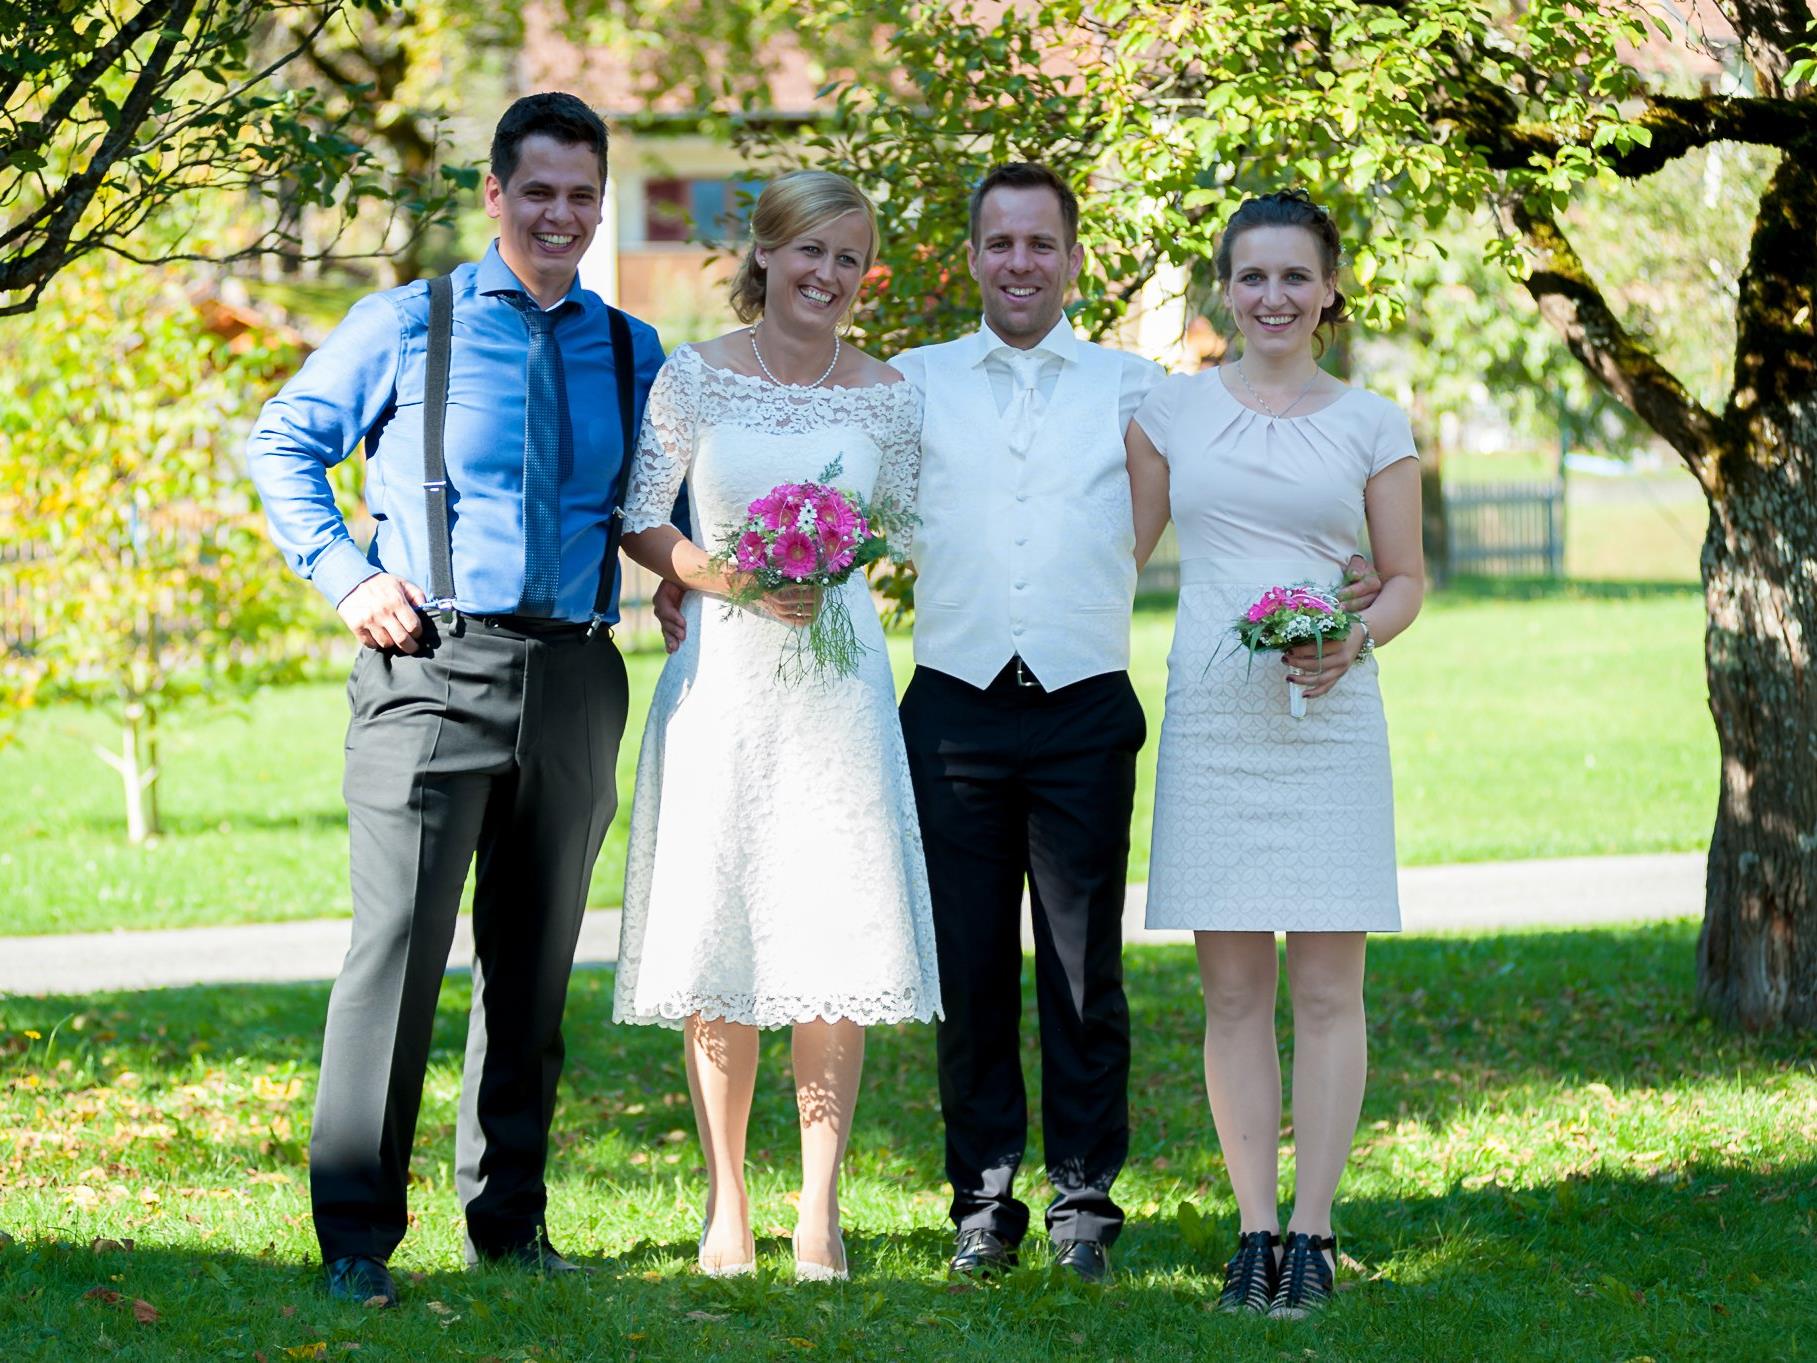 Das glückliche Brautpaar posiert für den Fotografen.